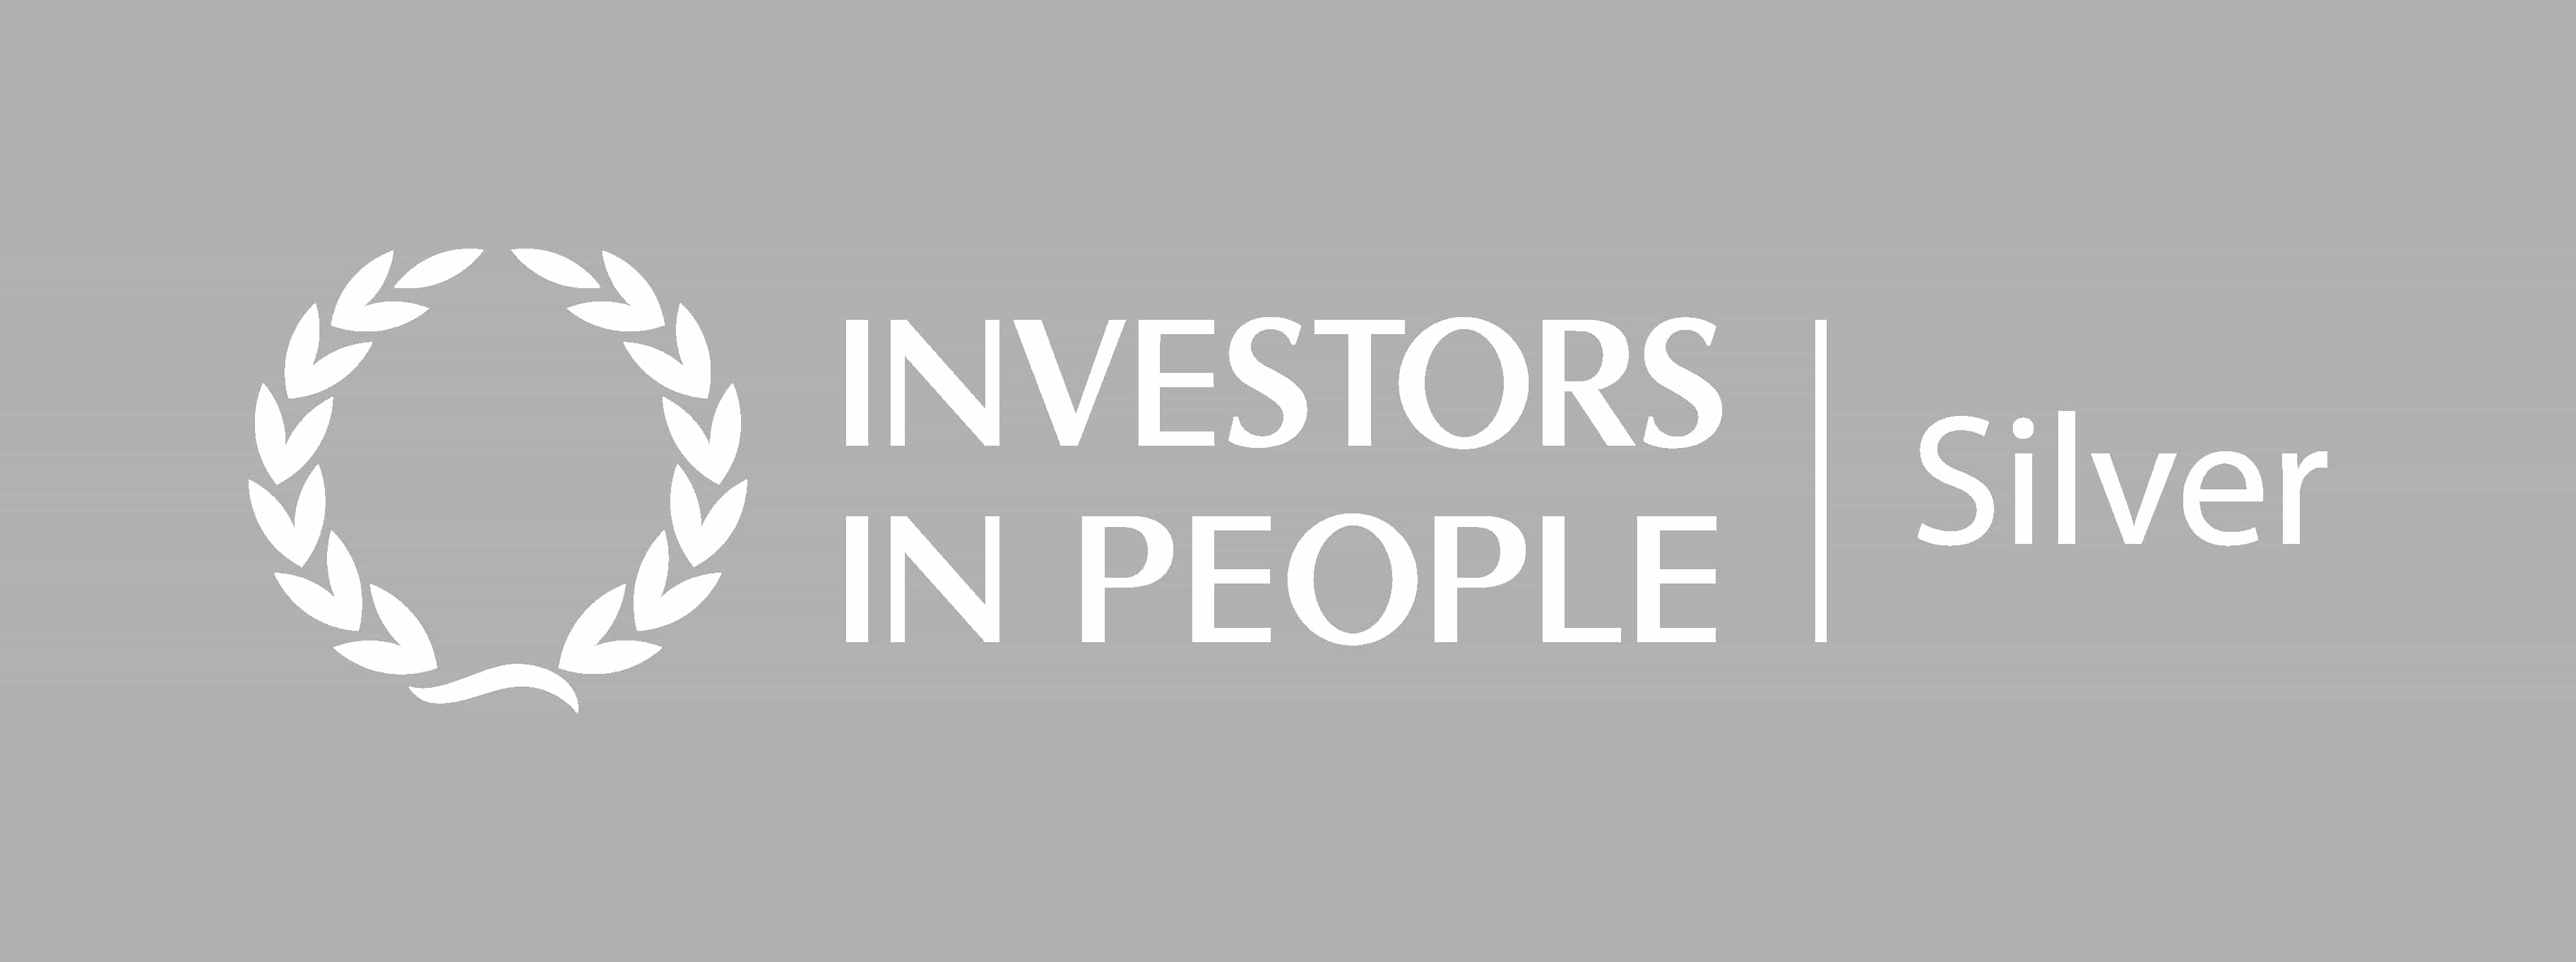 Investors in People Logo - Nacro awarded Investors in People Silver Accreditation | Nacro